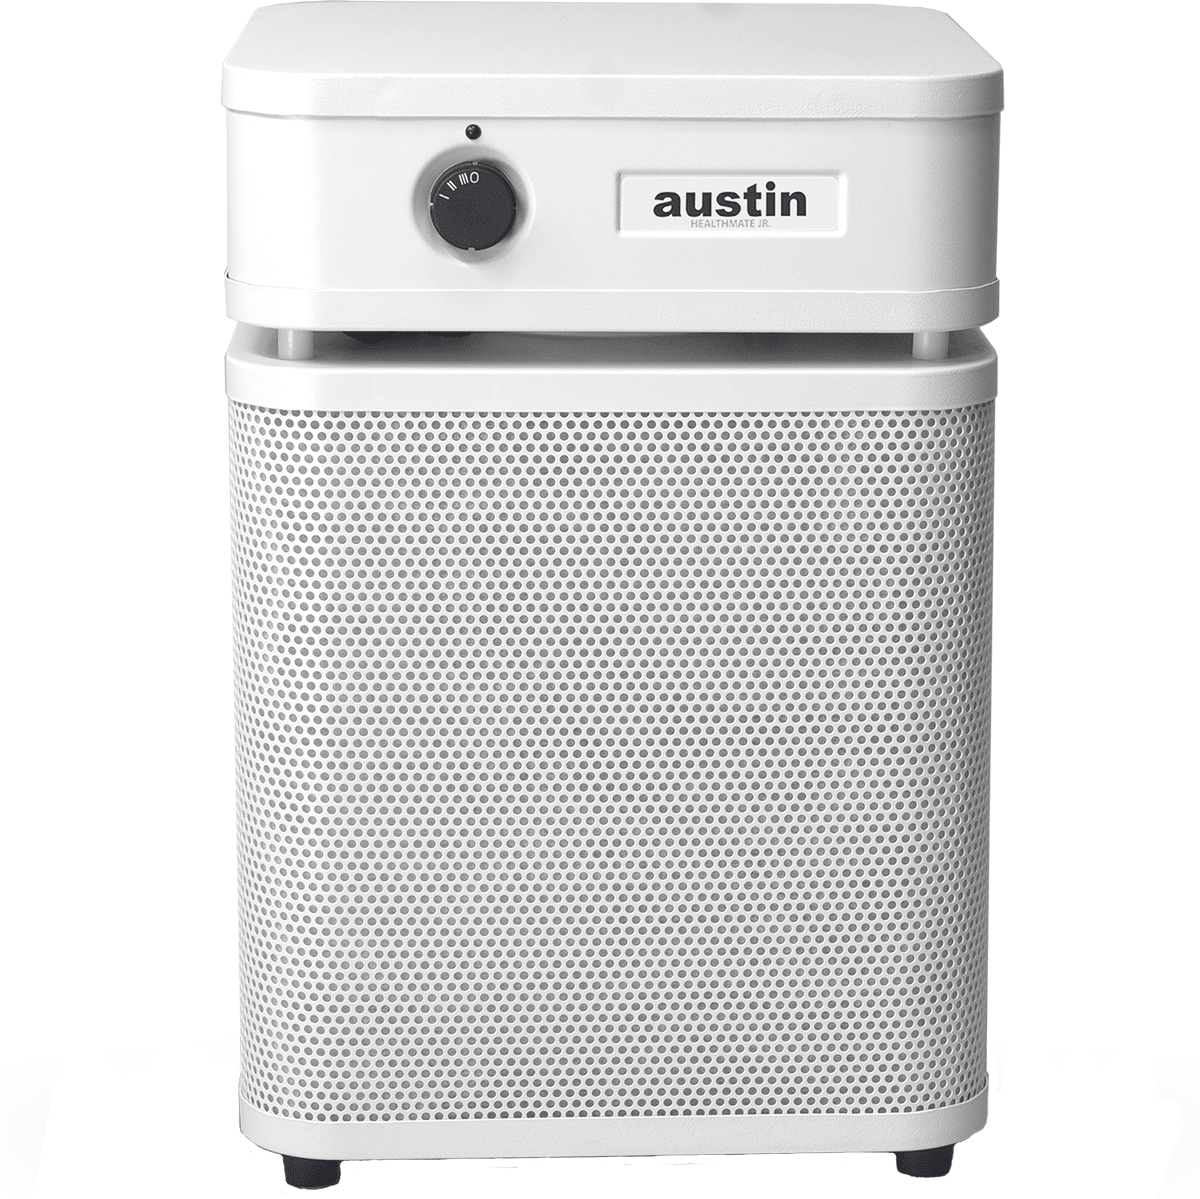 Austin Air HealthMate Plus Jr. HM250 Air Purifier - White